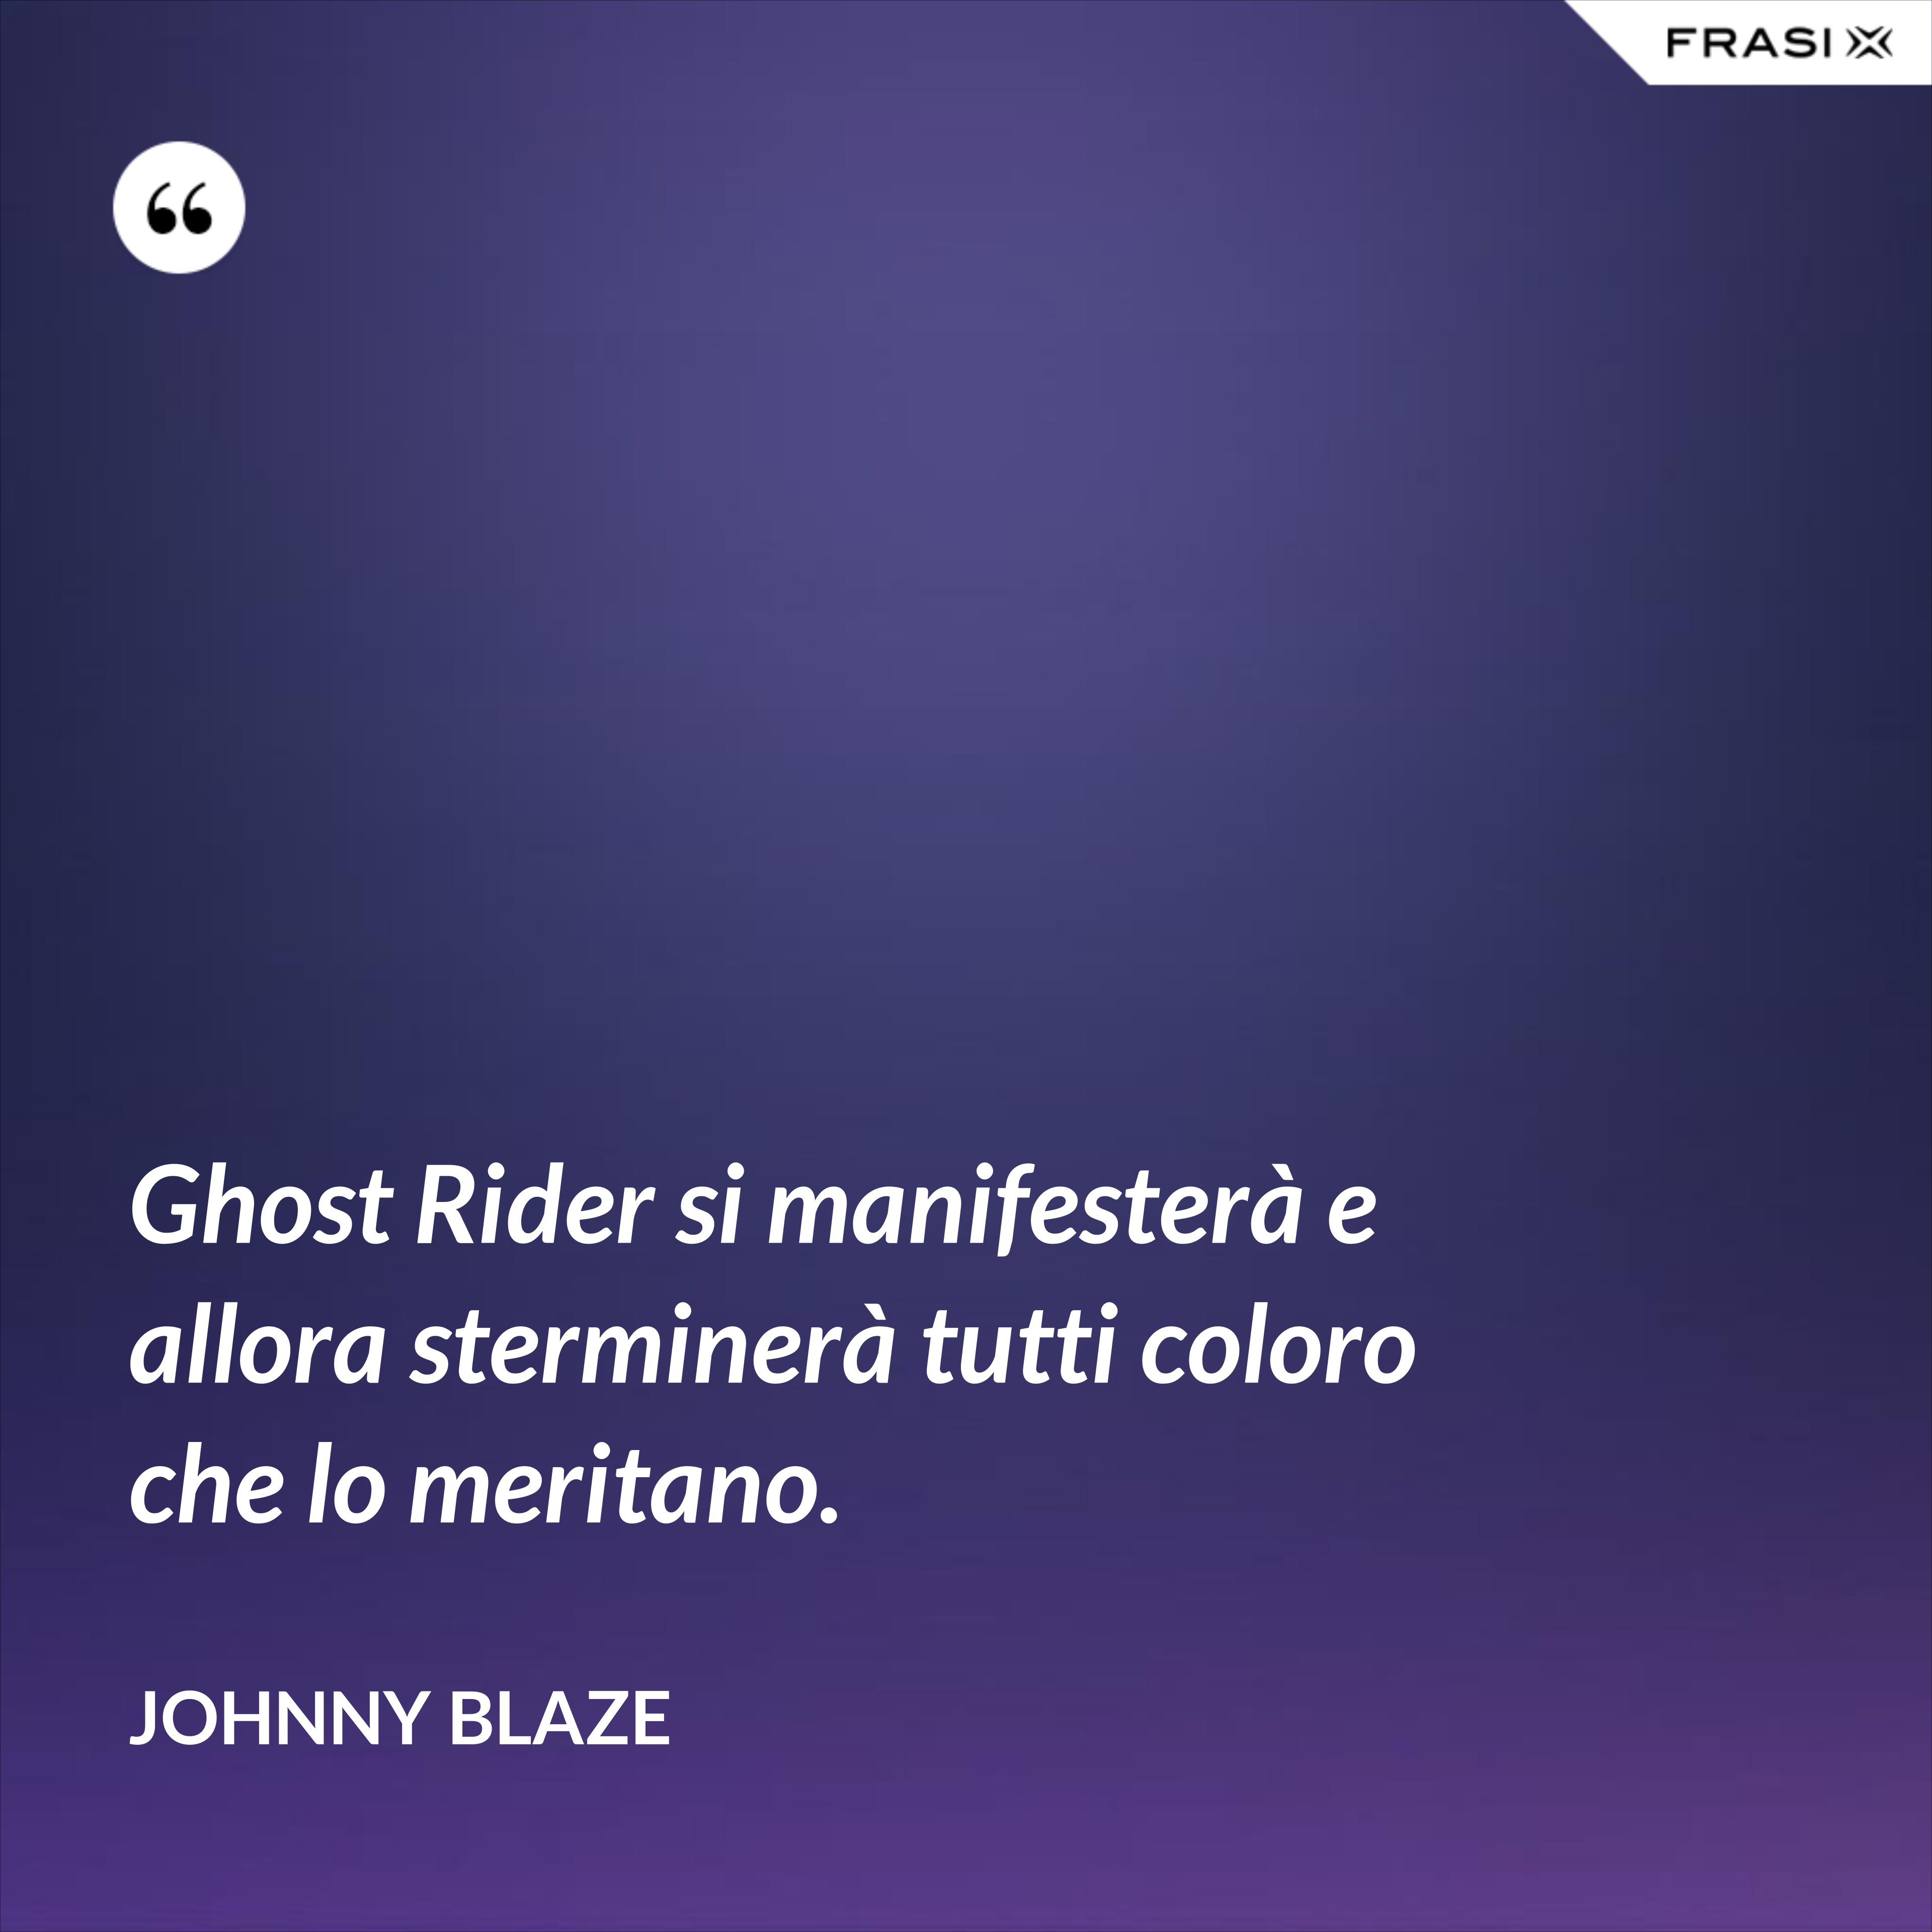 Ghost Rider si manifesterà e allora sterminerà tutti coloro che lo meritano. - Johnny Blaze